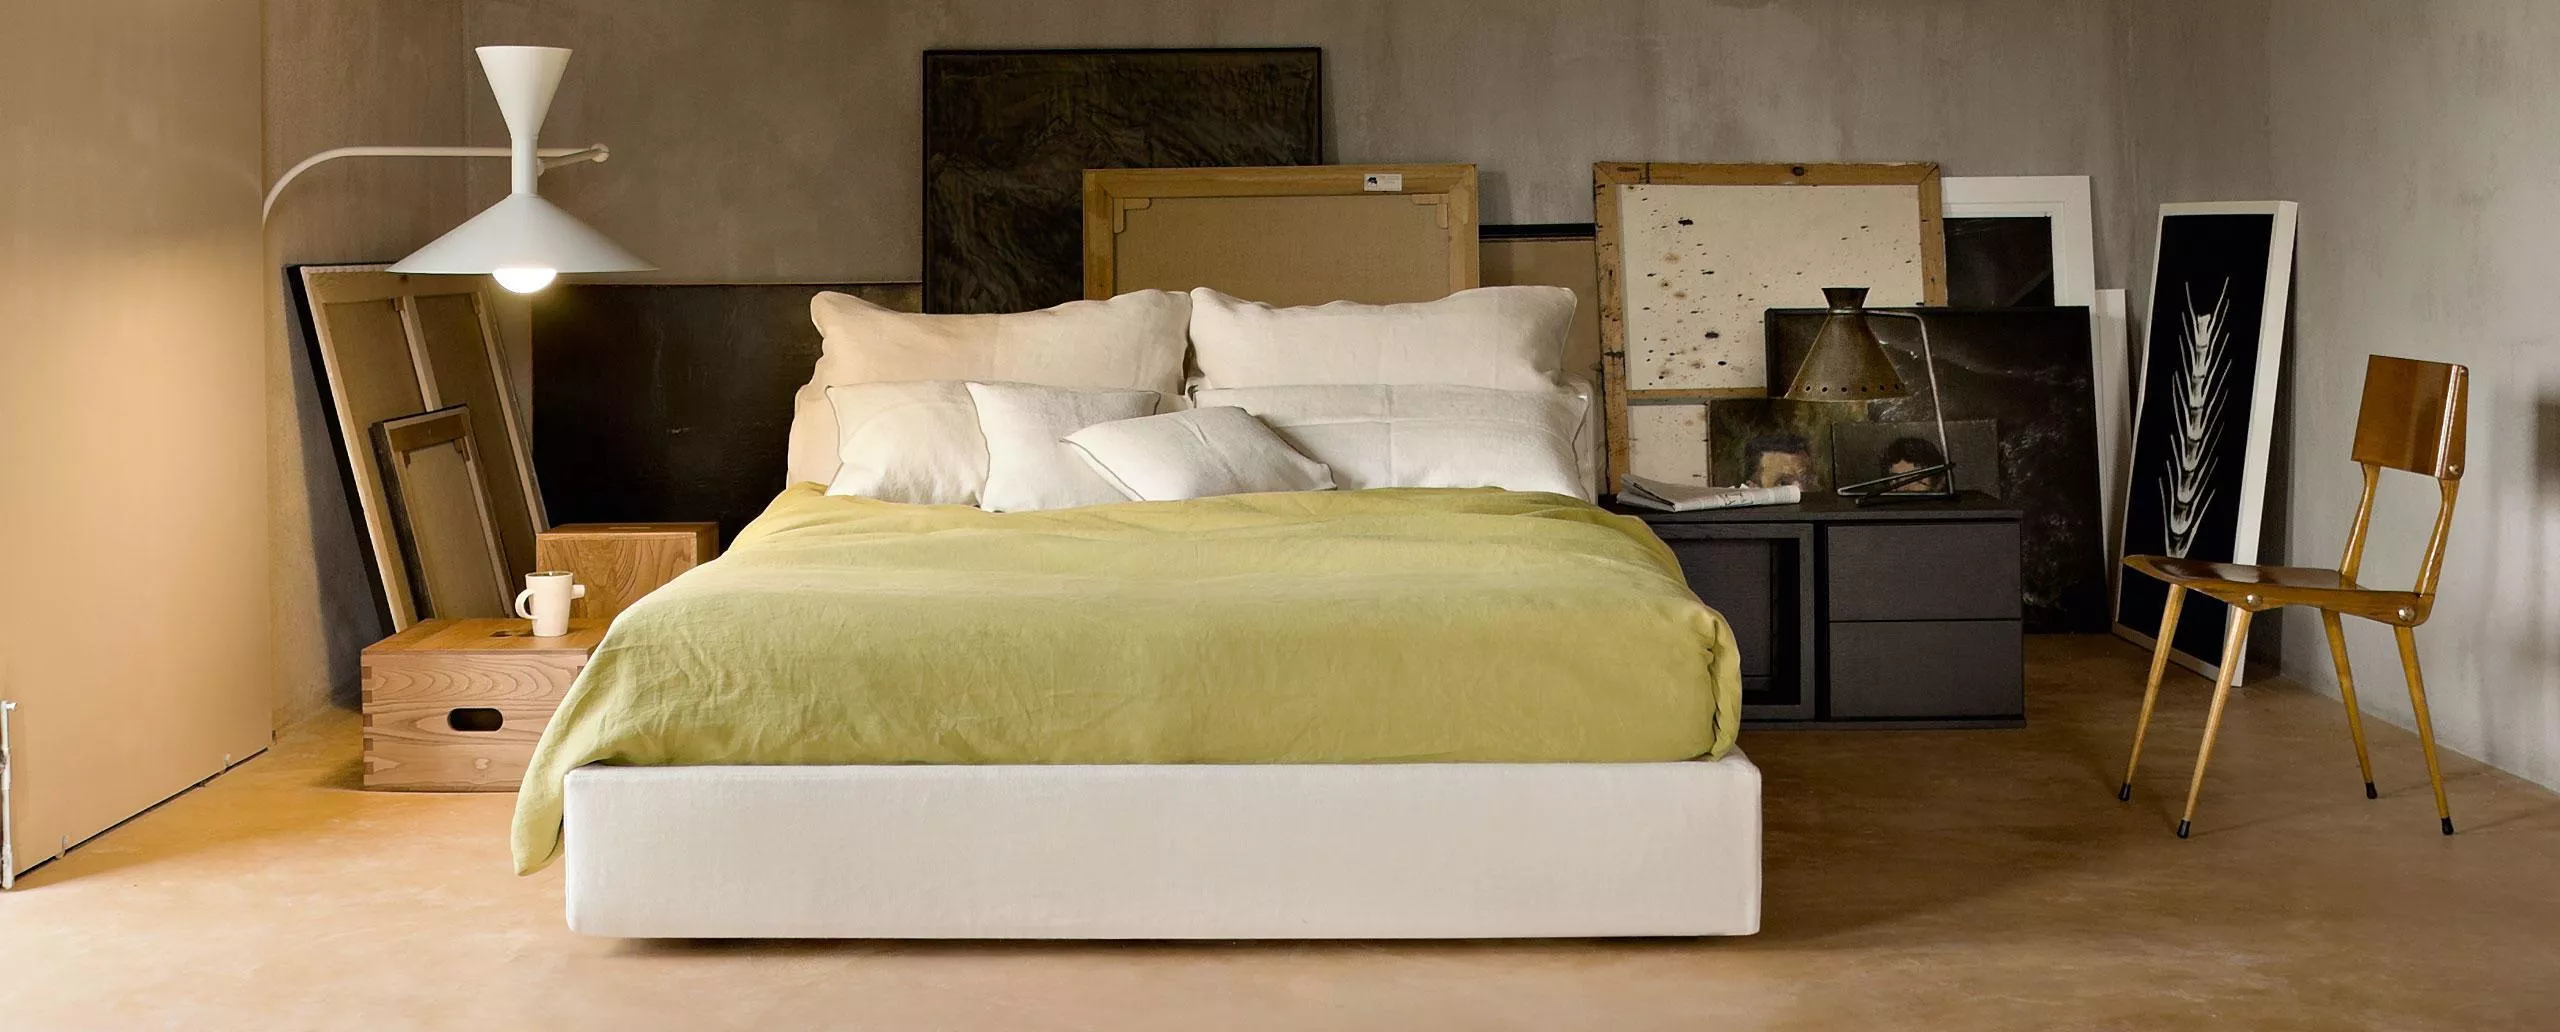 Кровать Mex Cassina L34 — купить по цене фабрики